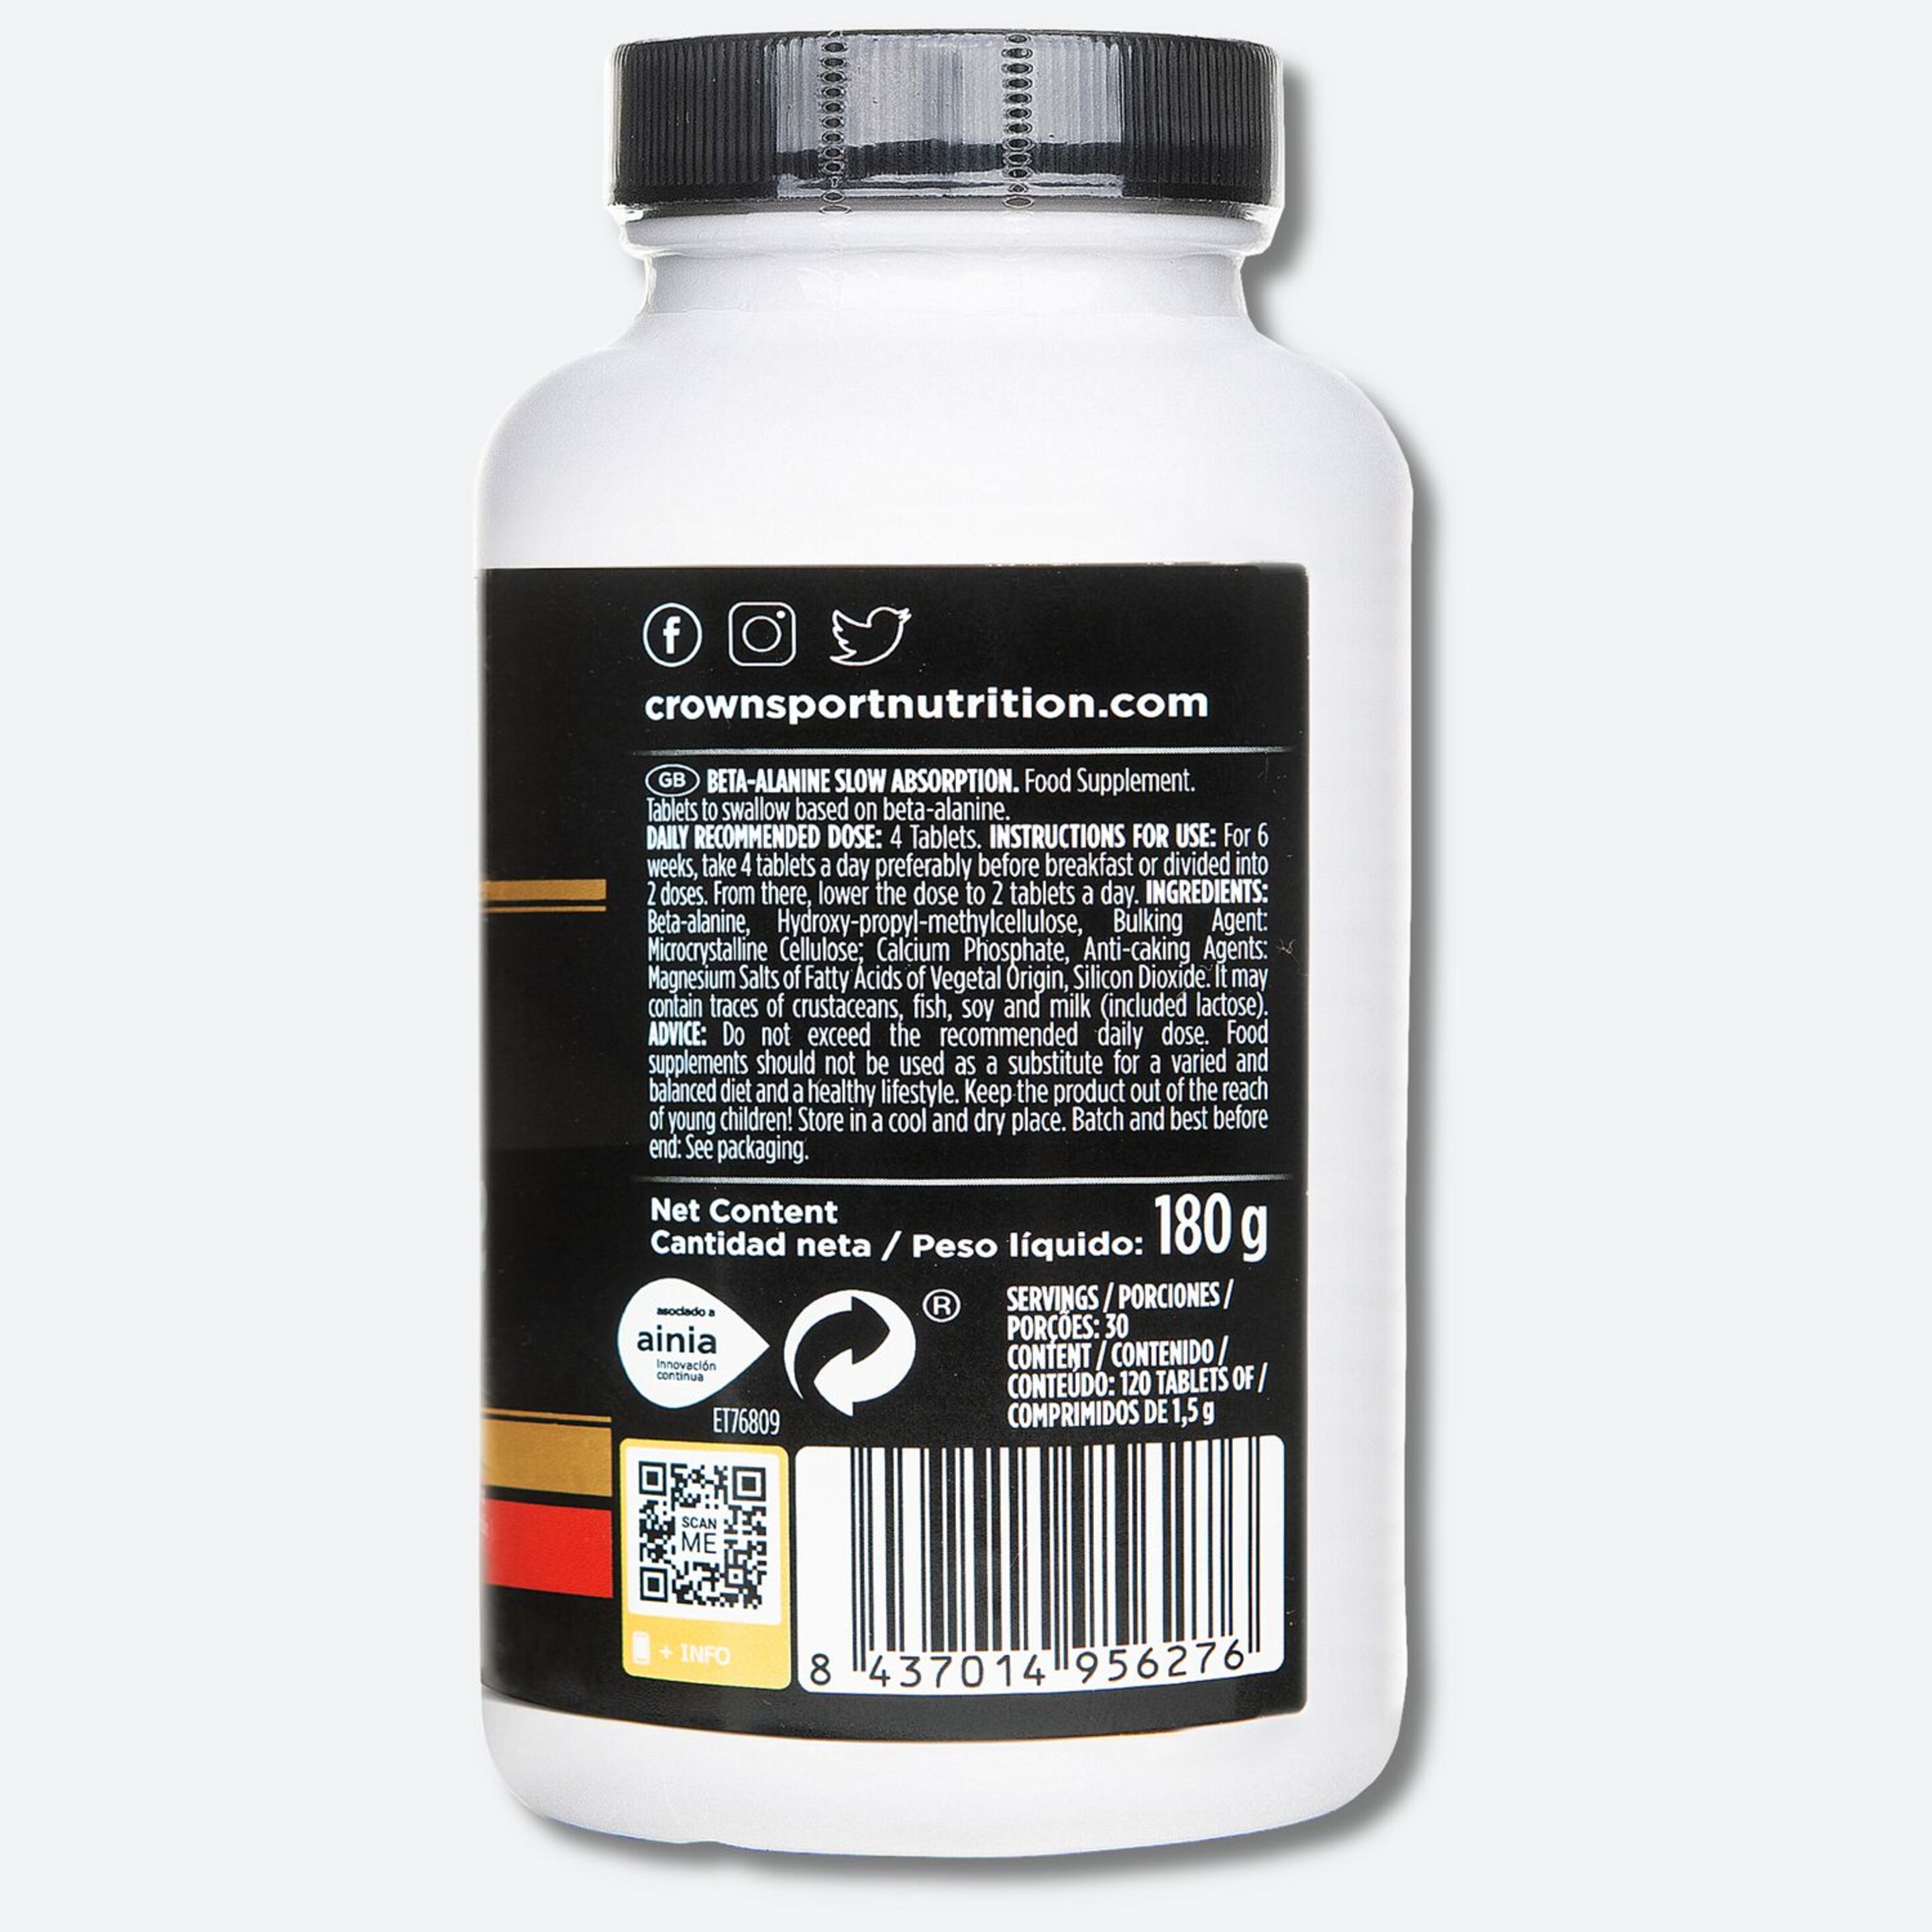 Bote De Aminoácidos No Esenciales ‘beta Alanine Slow Absortion‘ 120 Cápsulas - 3200 Mg Por Toma  MKP